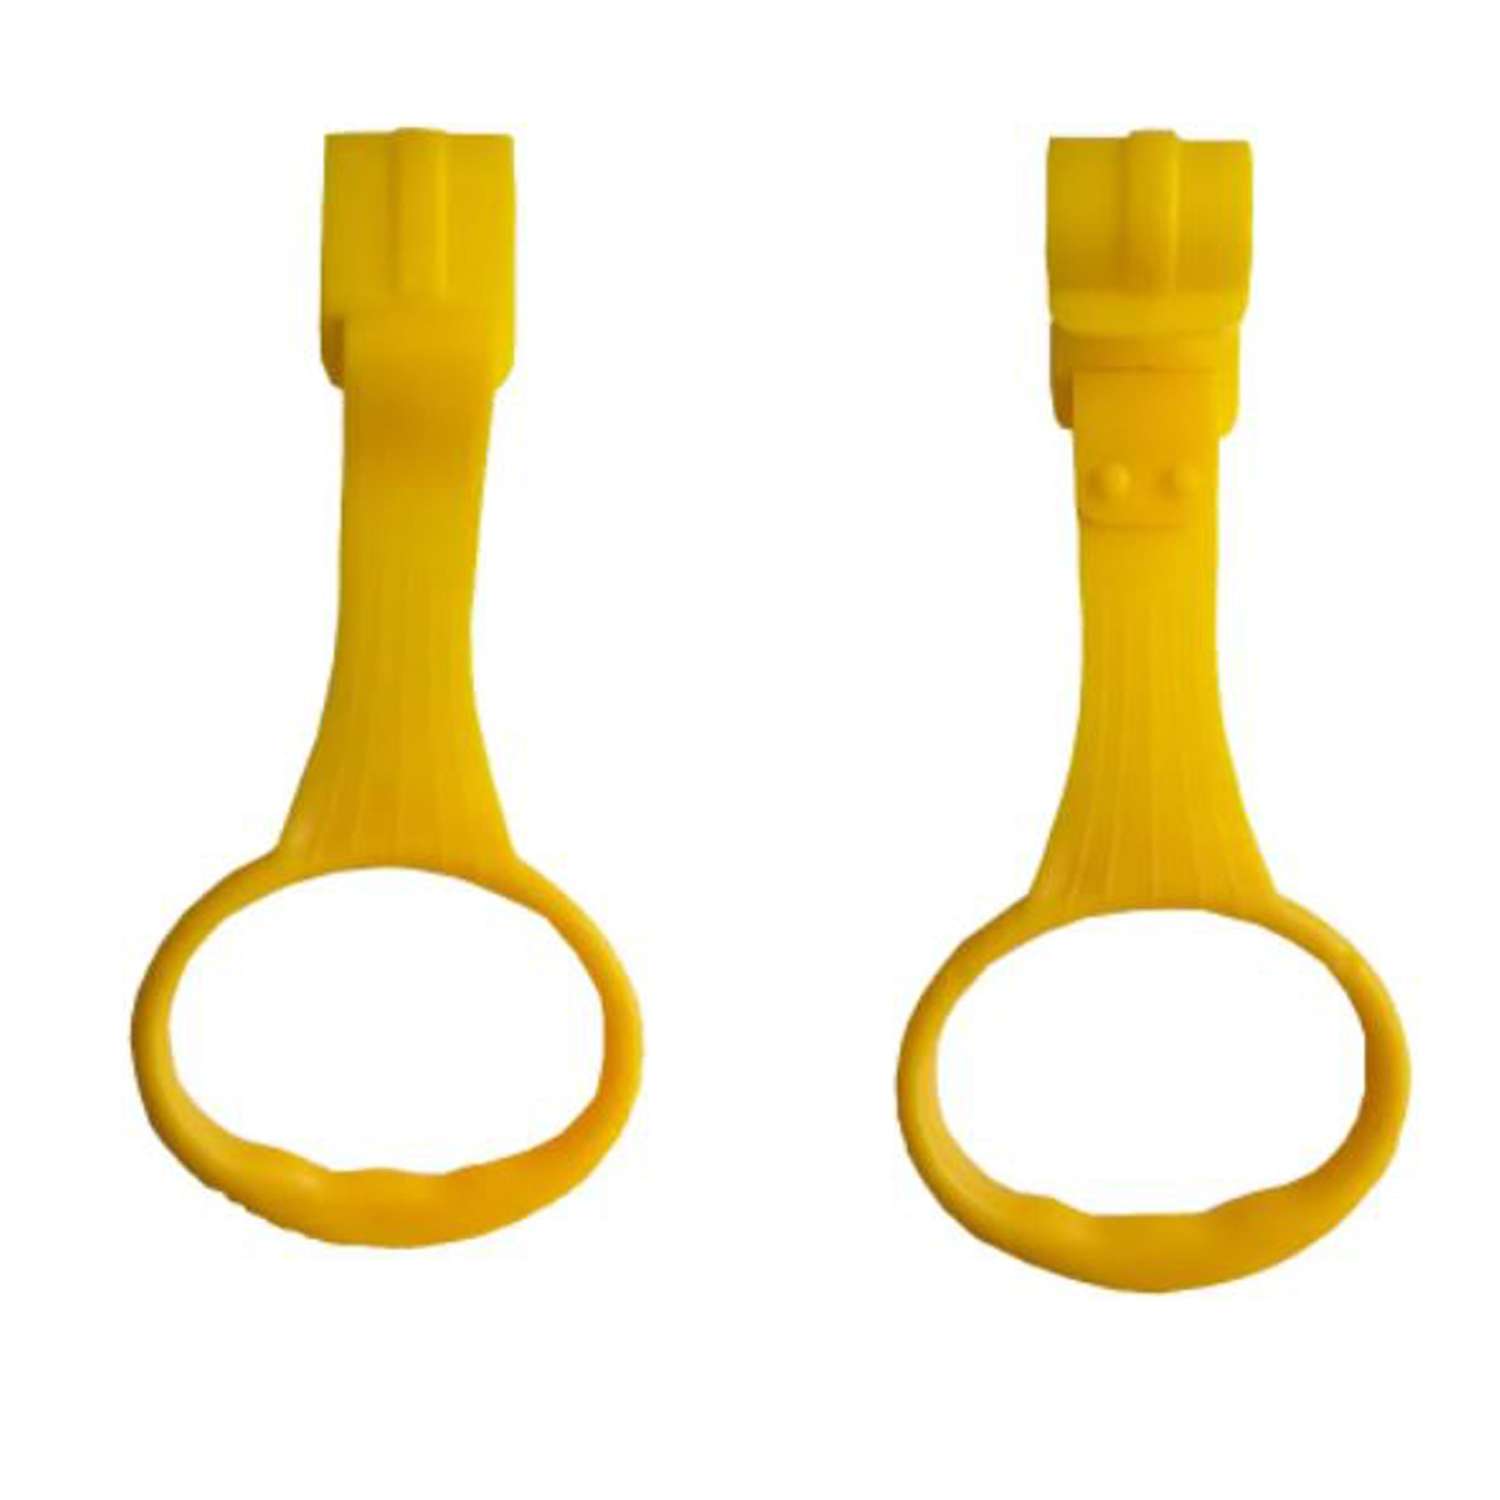 Пластиковые кольца Floopsi для манежа или барьера подвесные 2 шт kolso-2pc-yellow - фото 1